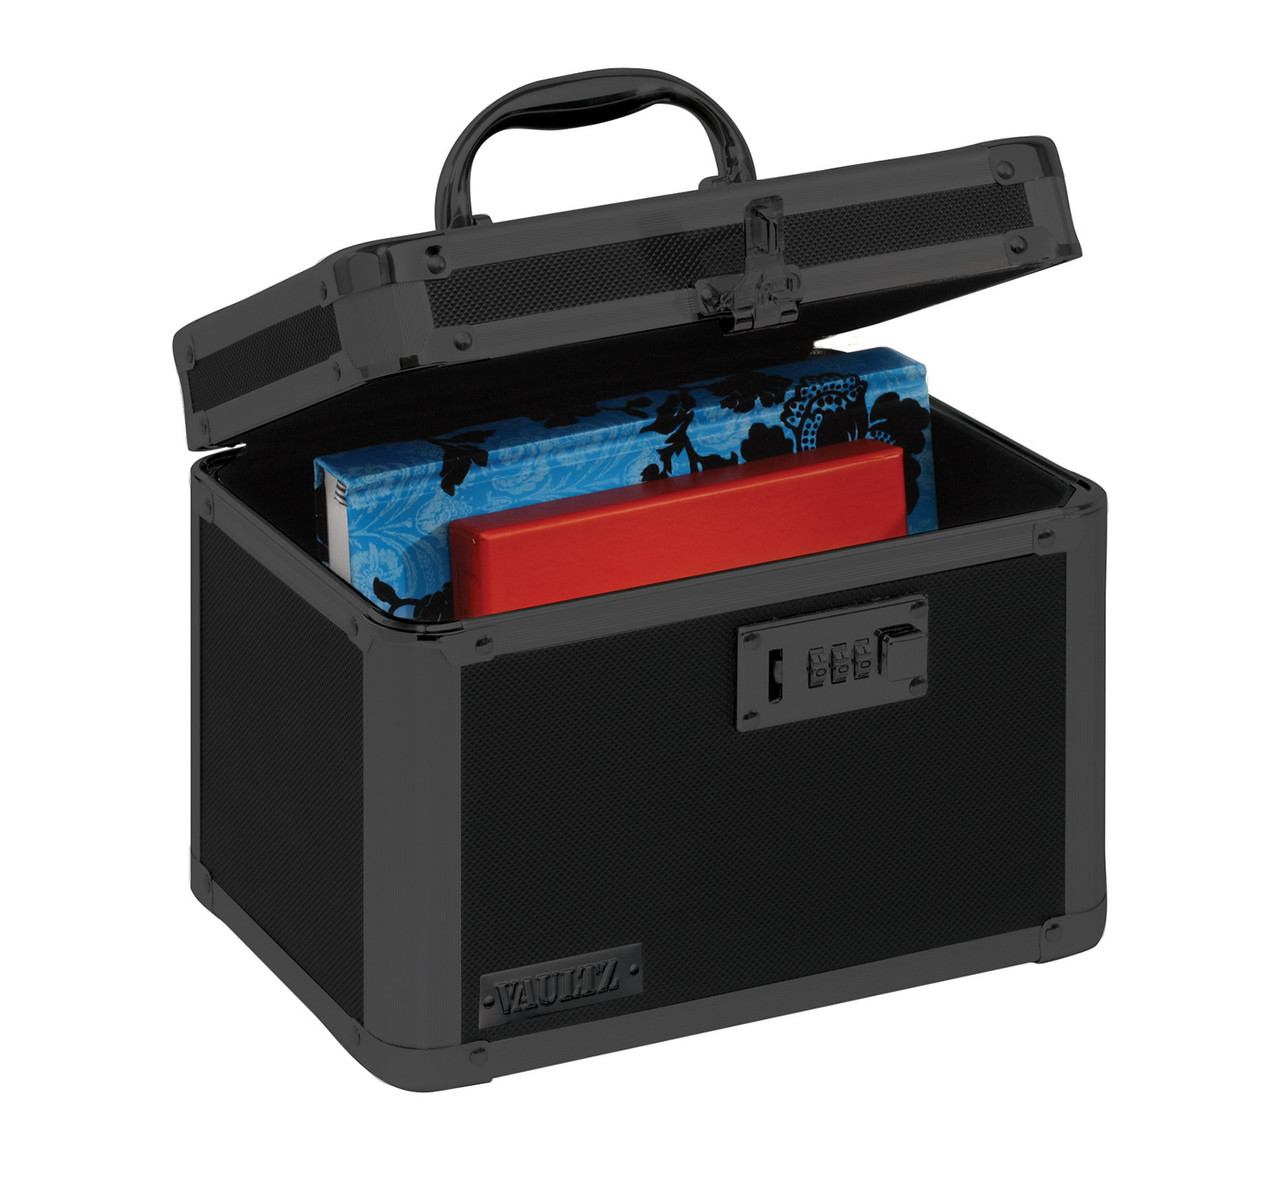 Locking Cooler Bag - Black- Vaultz - VZ03507